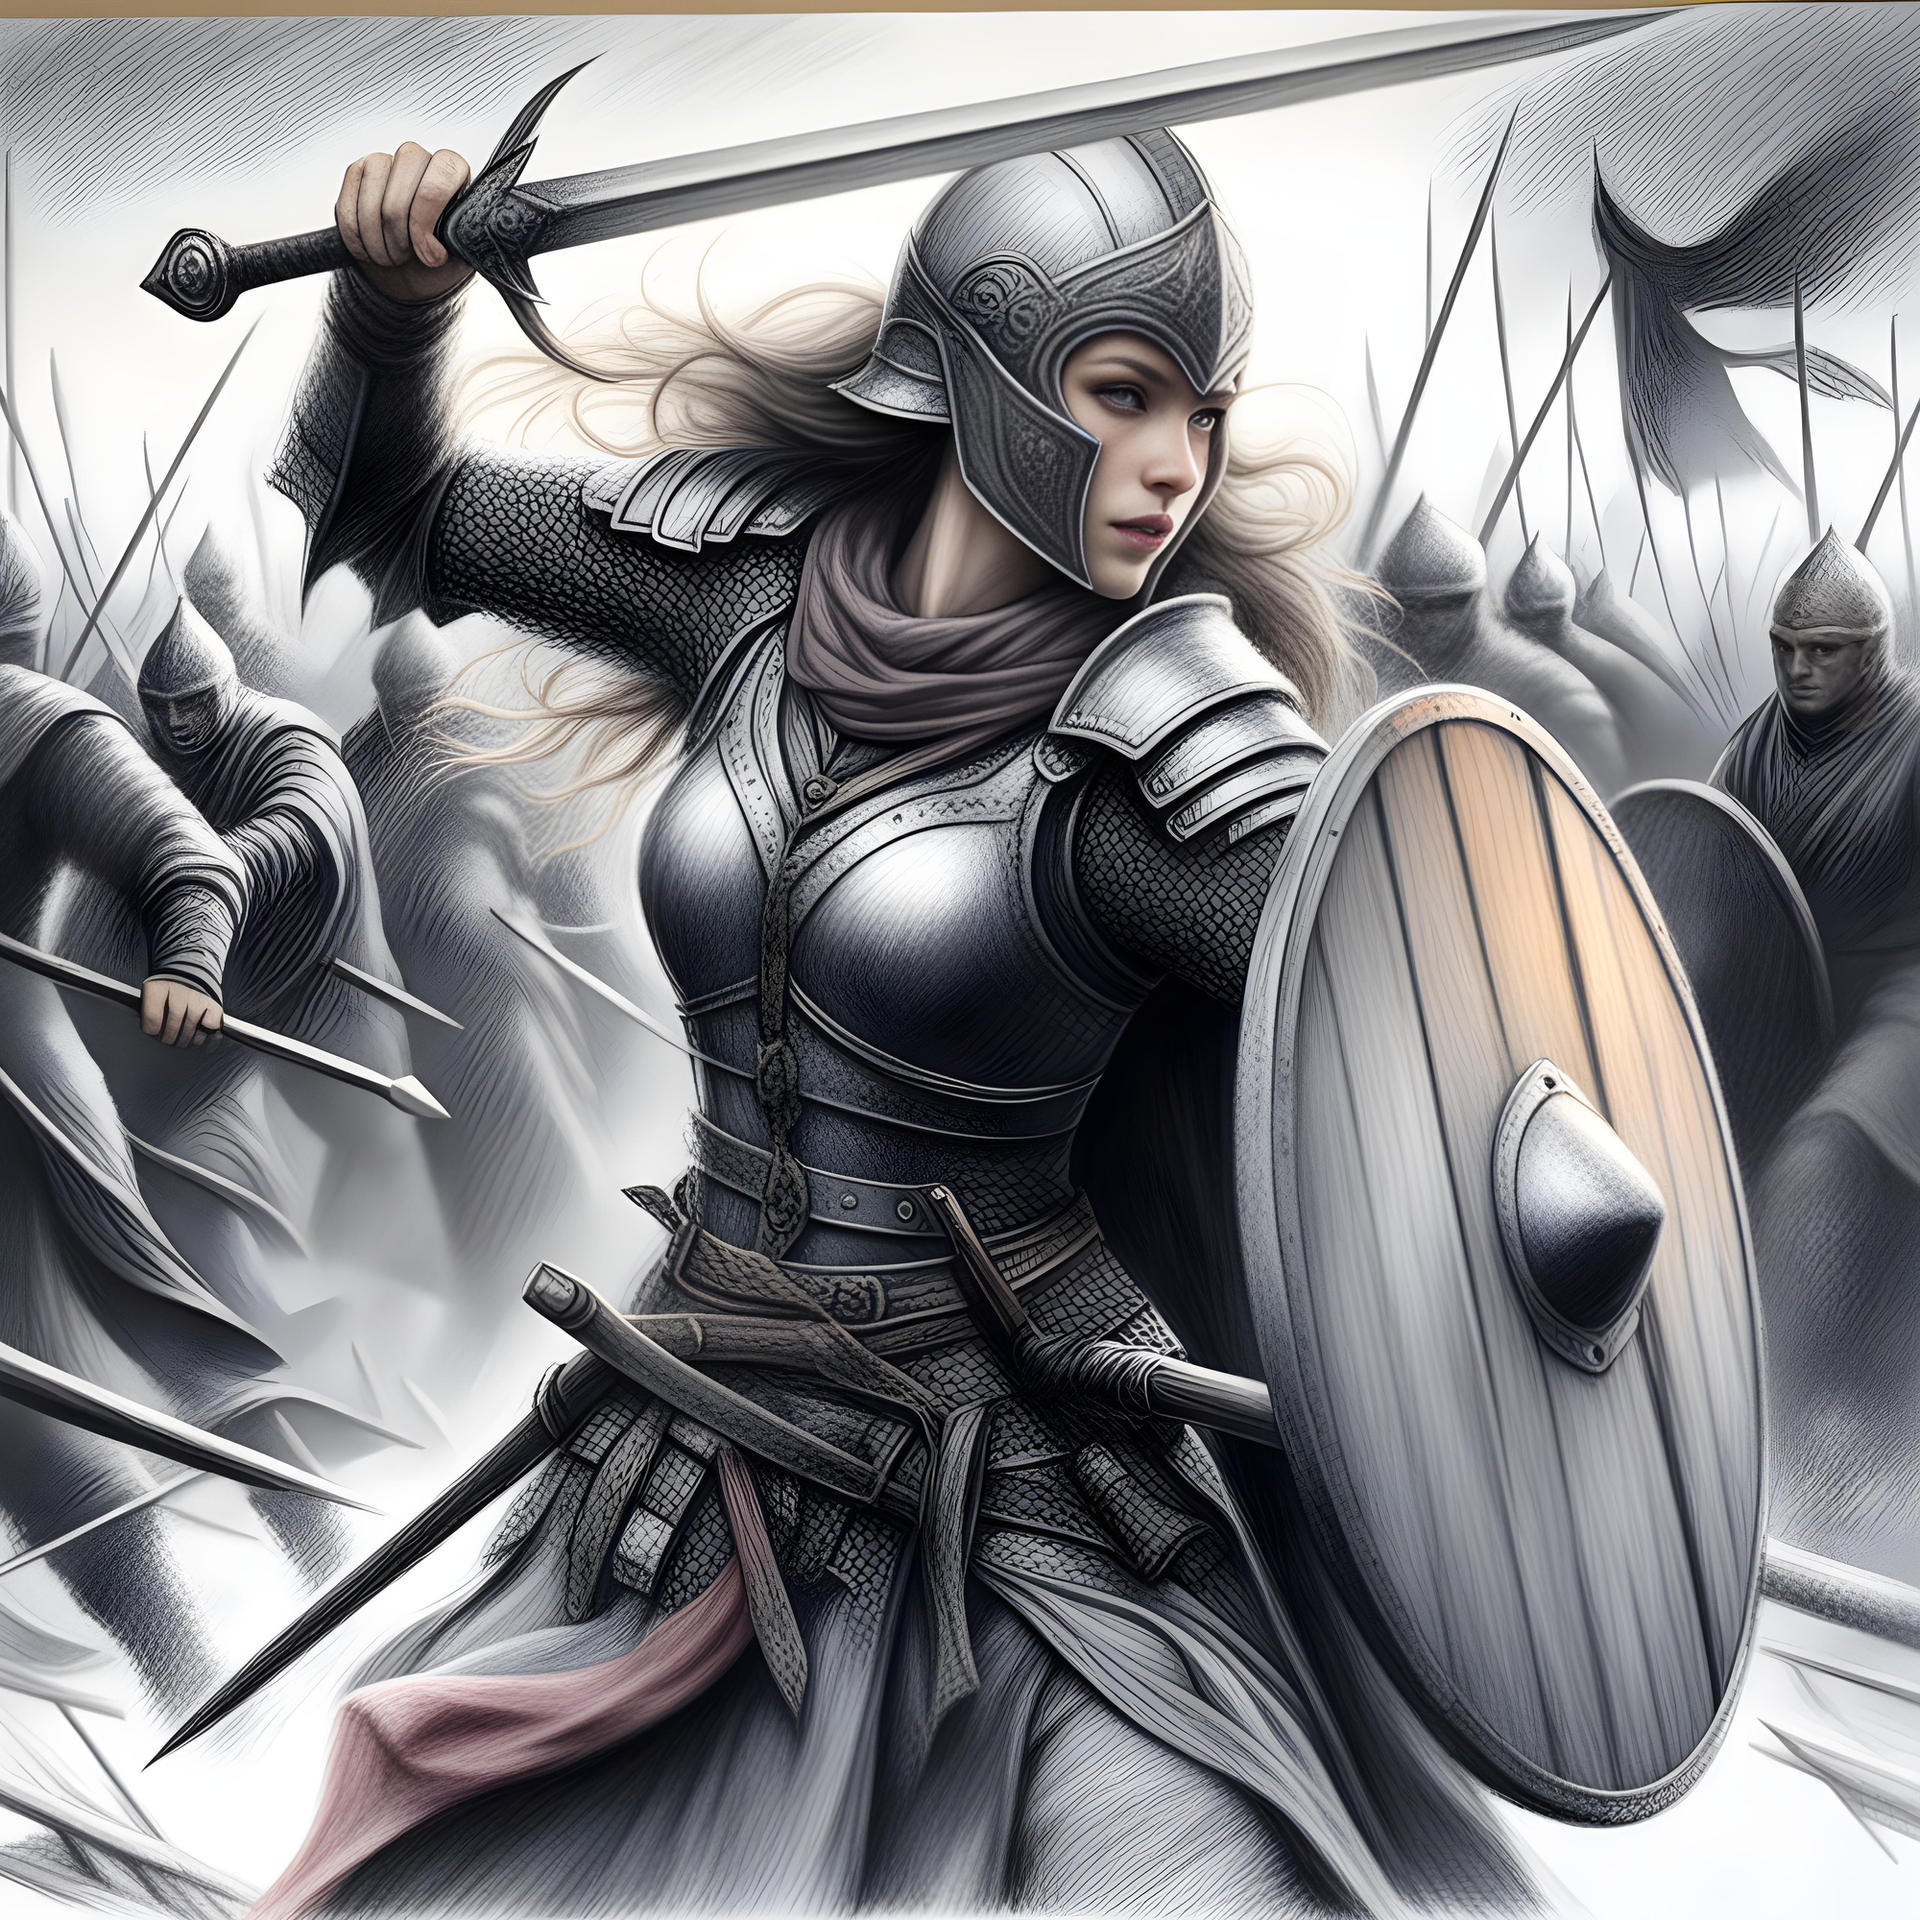 Shieldmaiden of Rohan by KuraiGeijutsu on DeviantArt